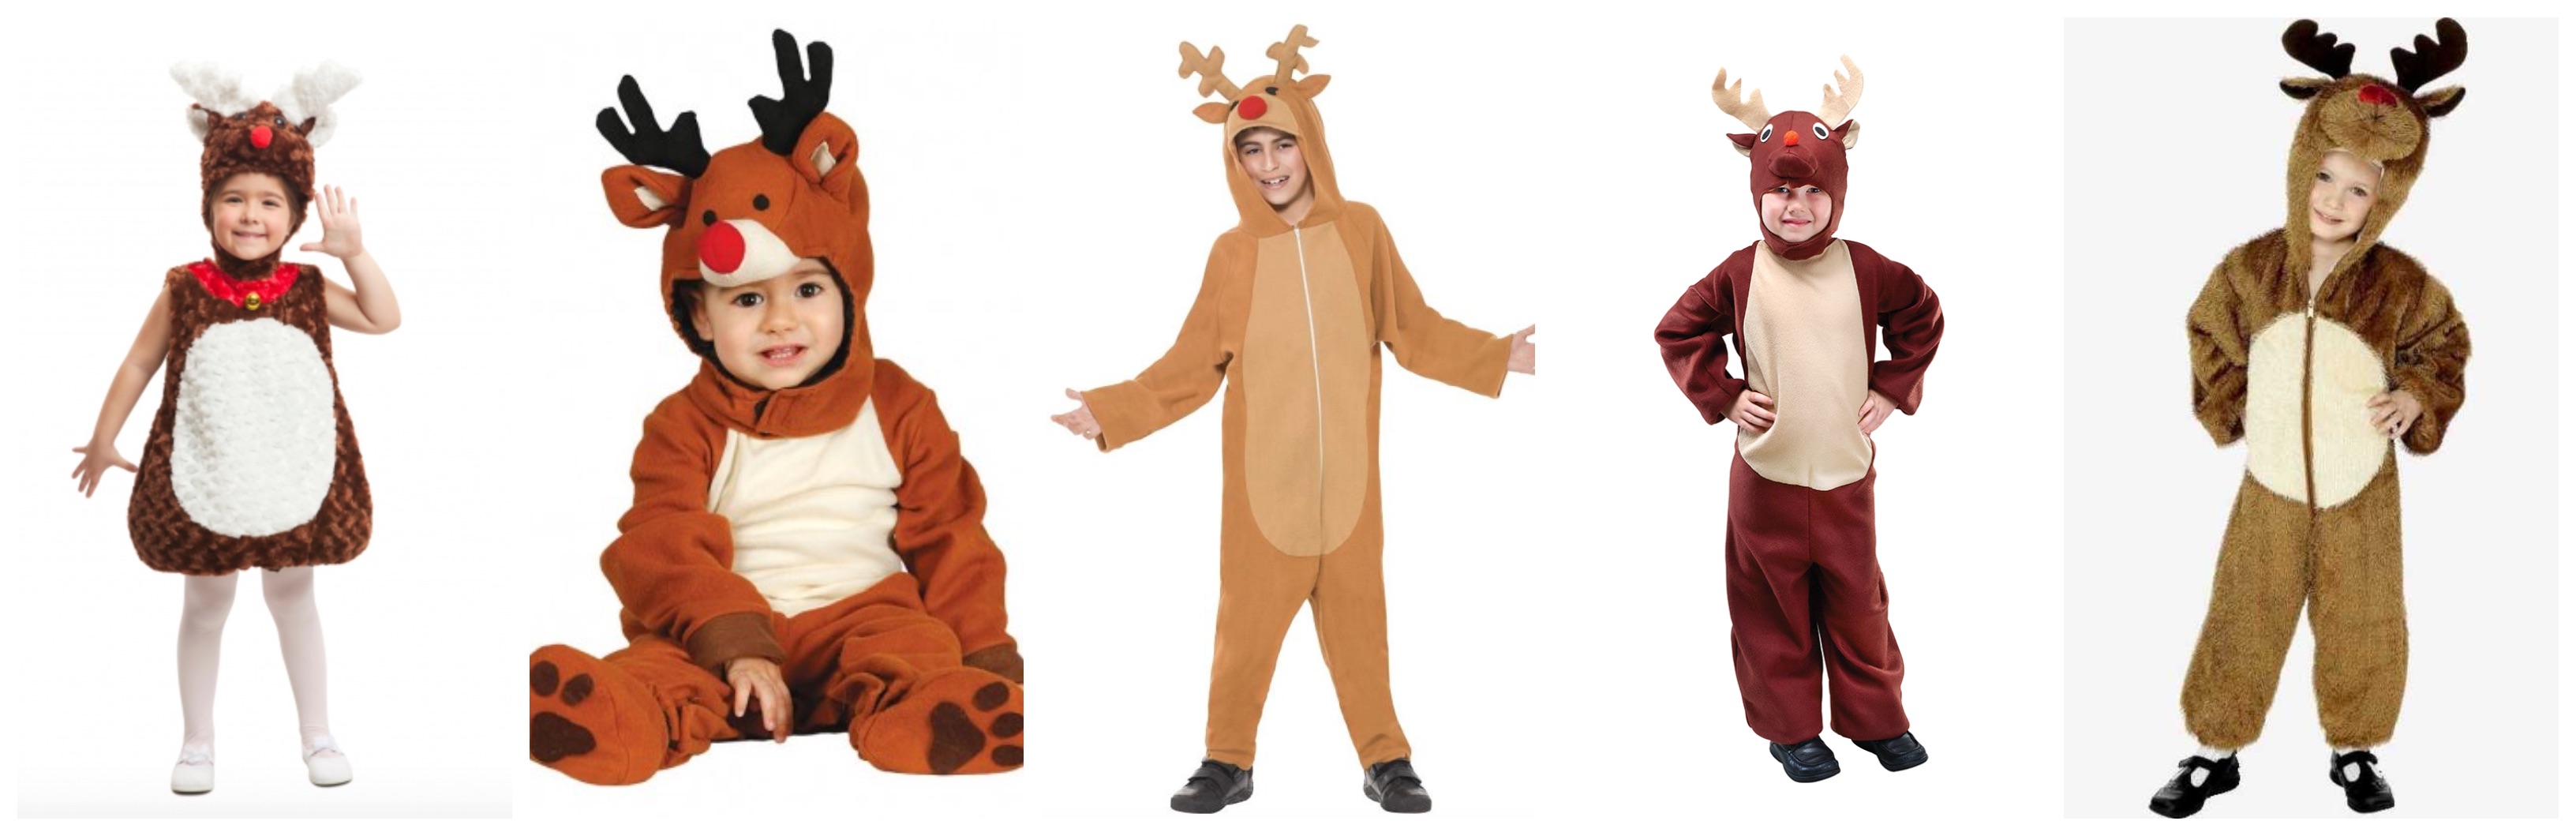 rudolf kostume til børn 2 - Rudolf kostume til børn